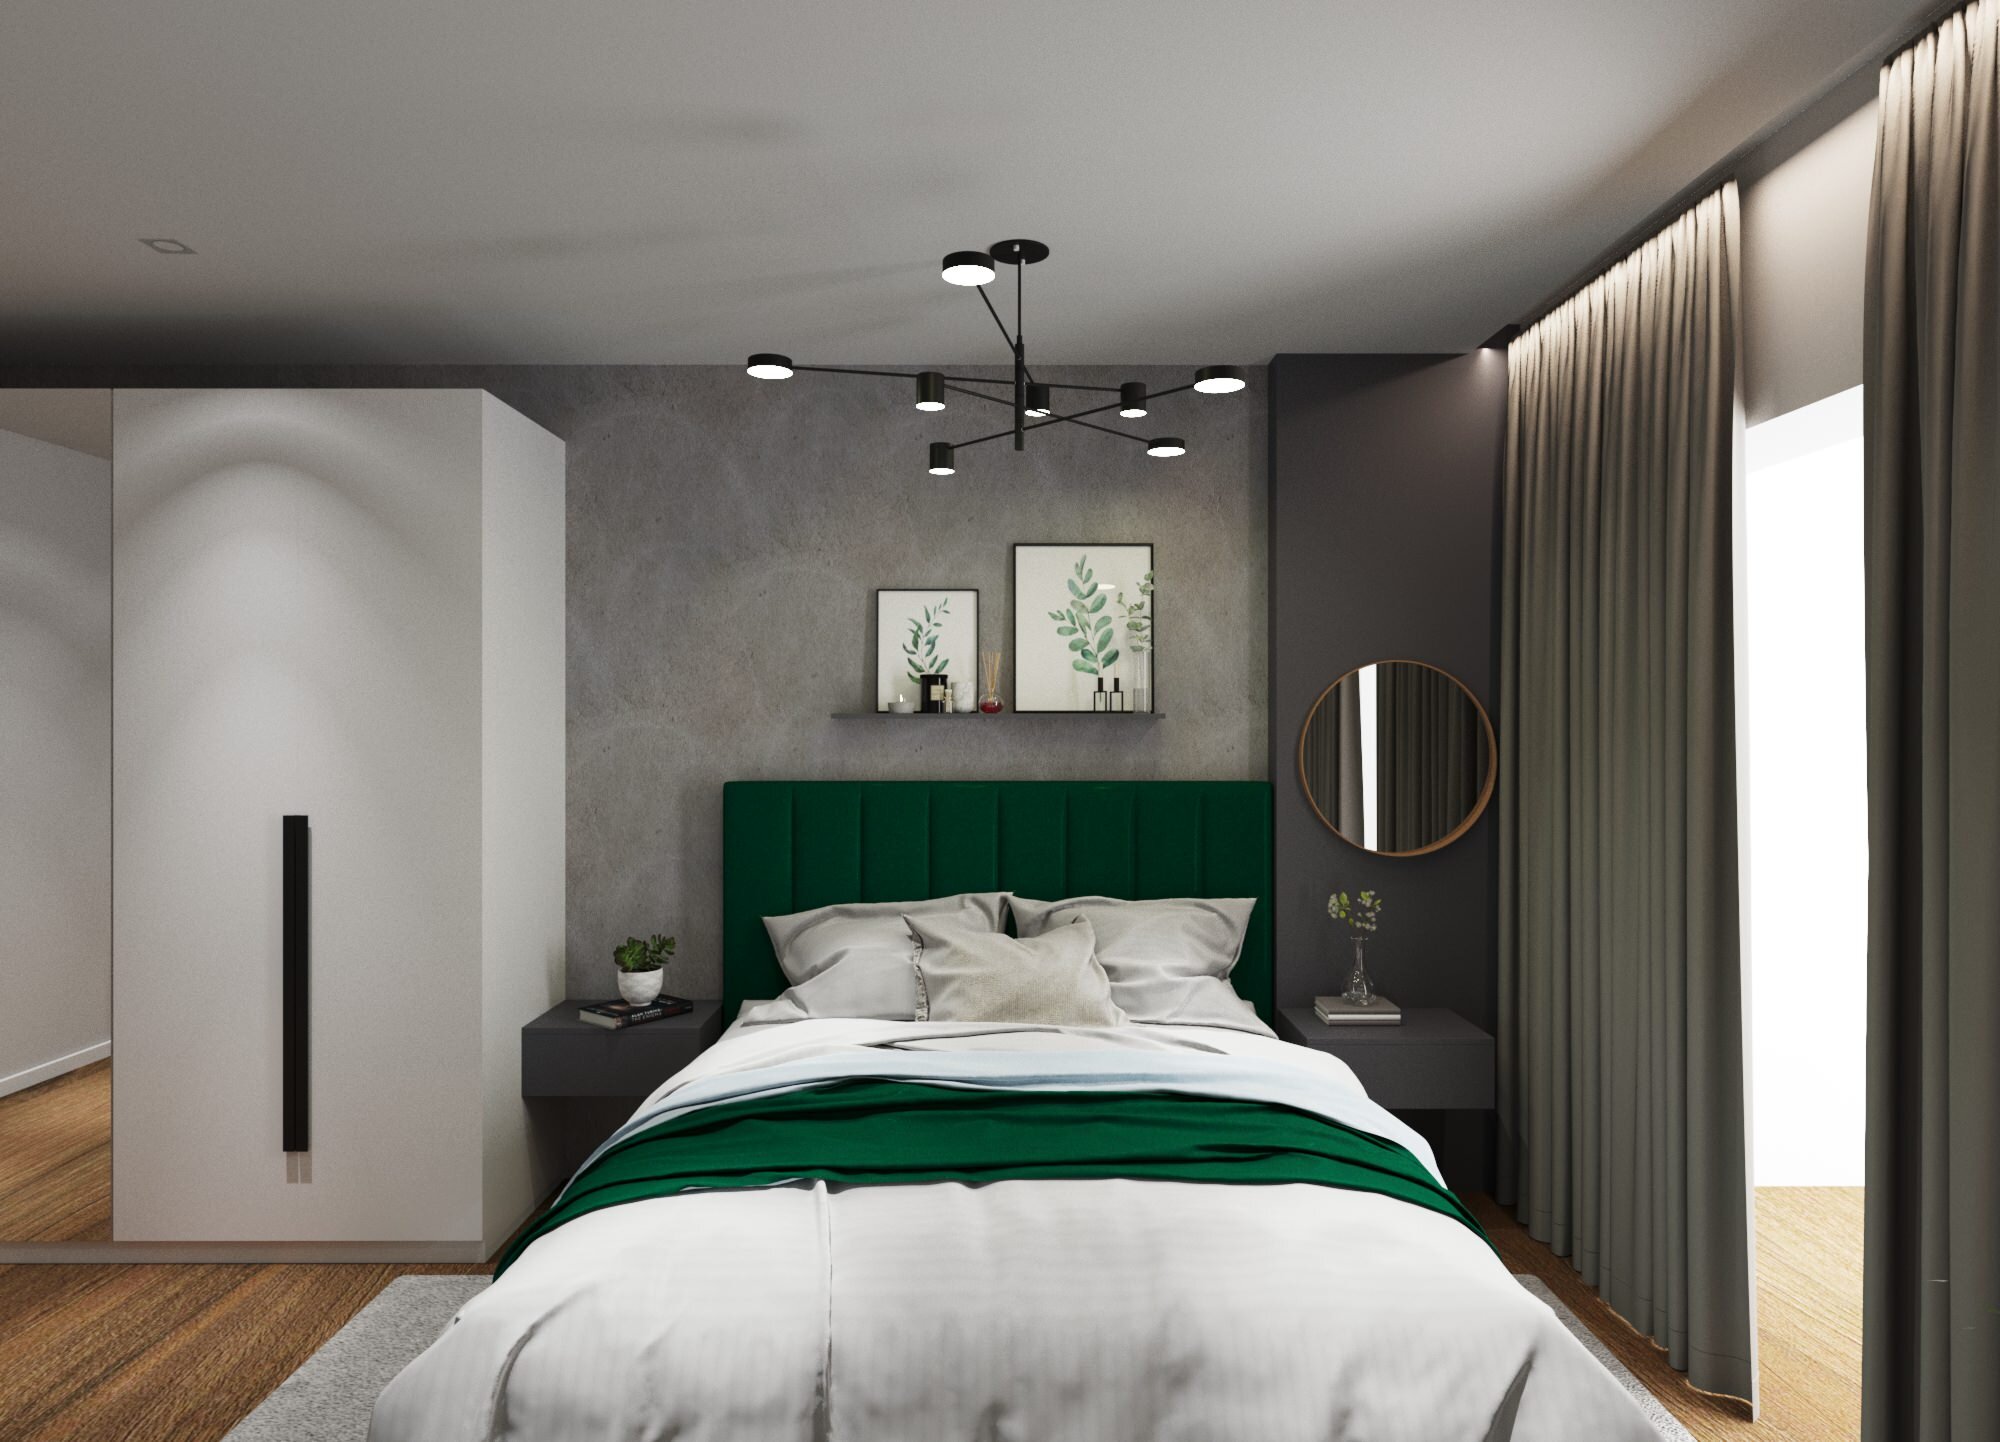 Интерьер спальни cветовыми линиями, рейками с подсветкой, подсветкой настенной, подсветкой светодиодной и светильниками над кроватью